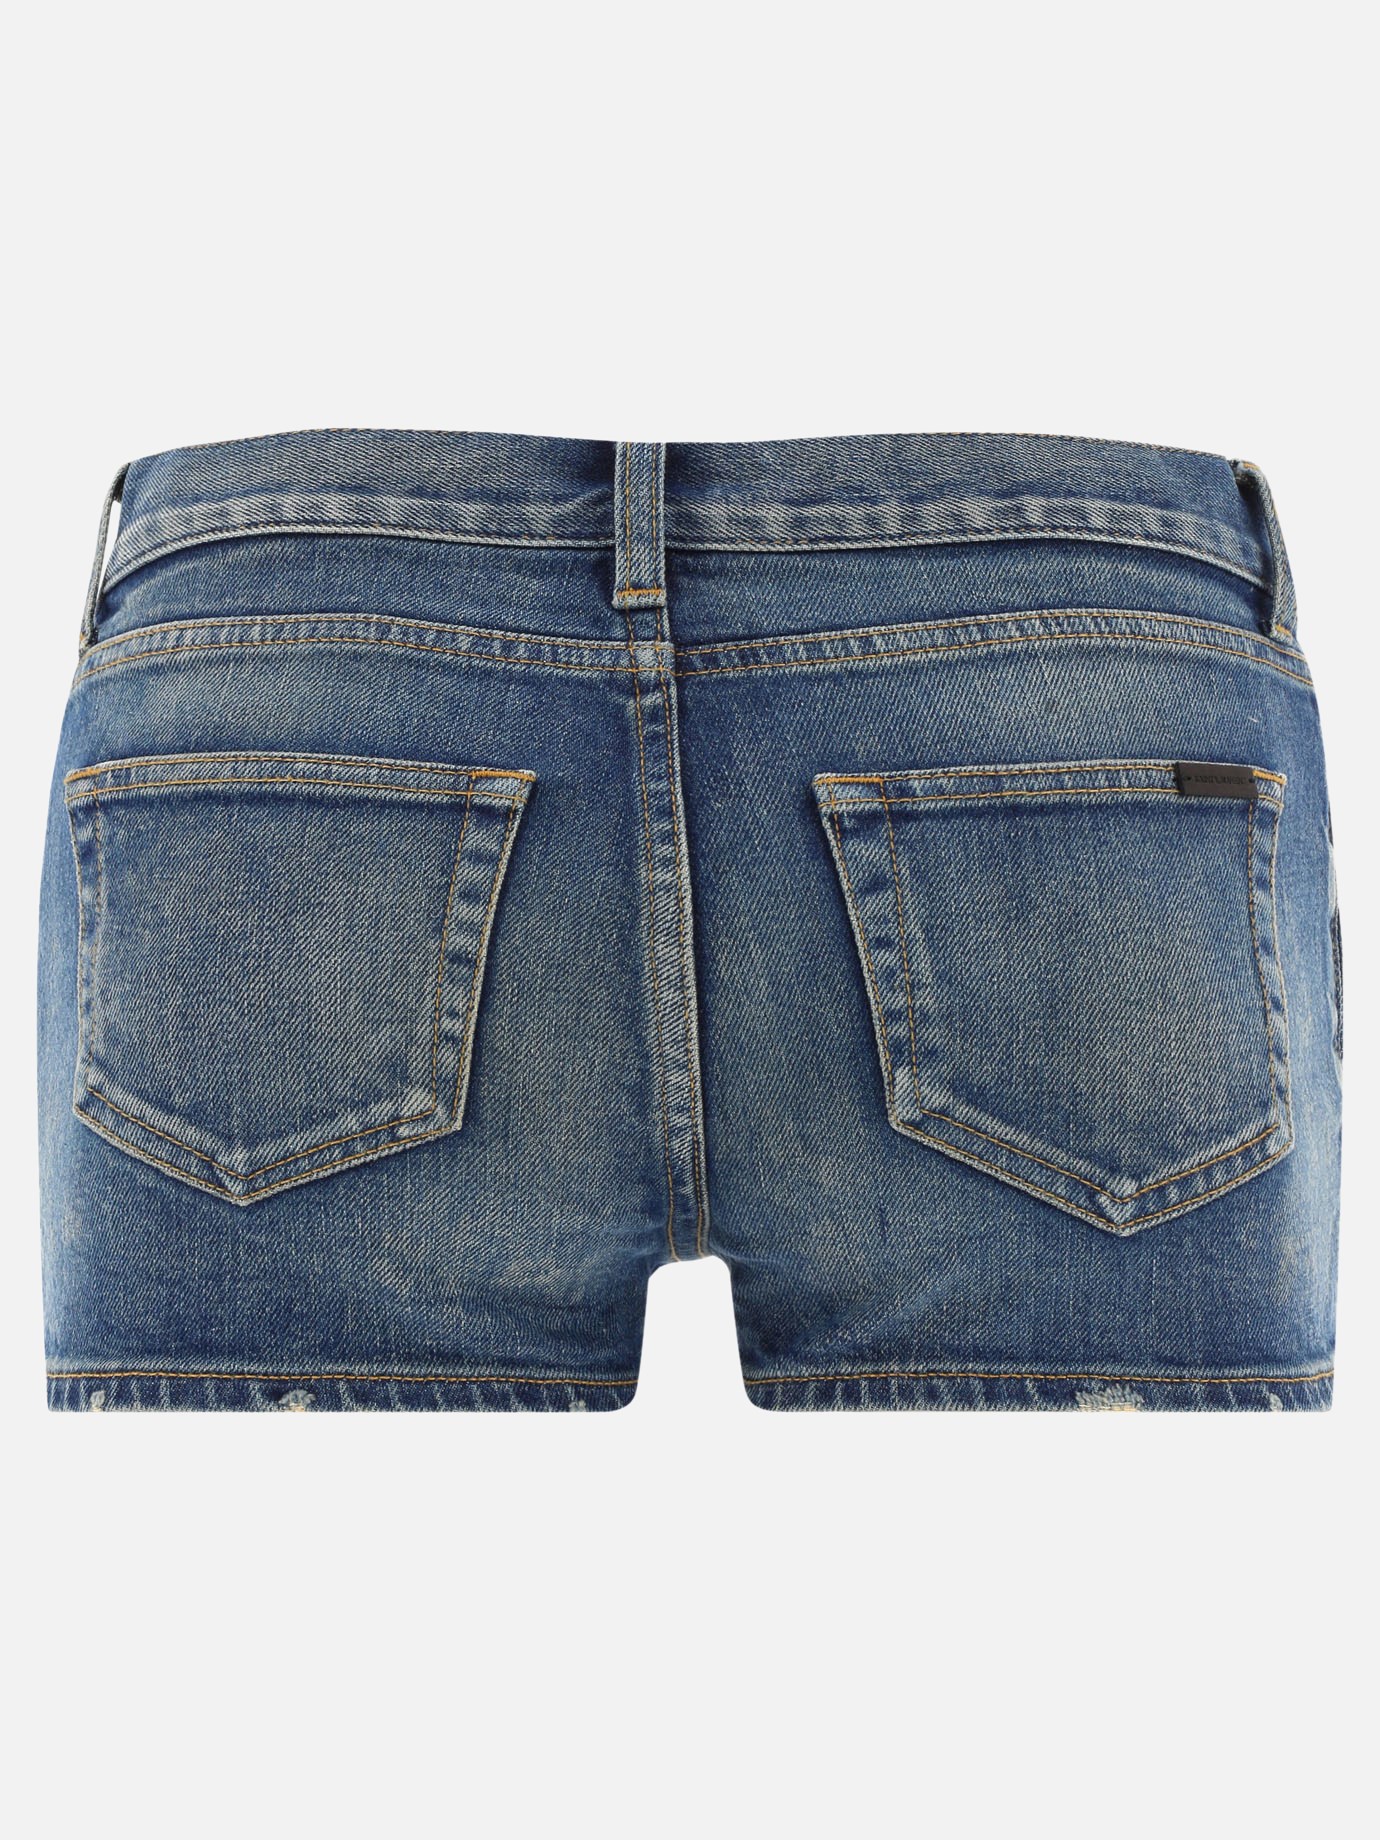 Denim shorts by Saint Laurent